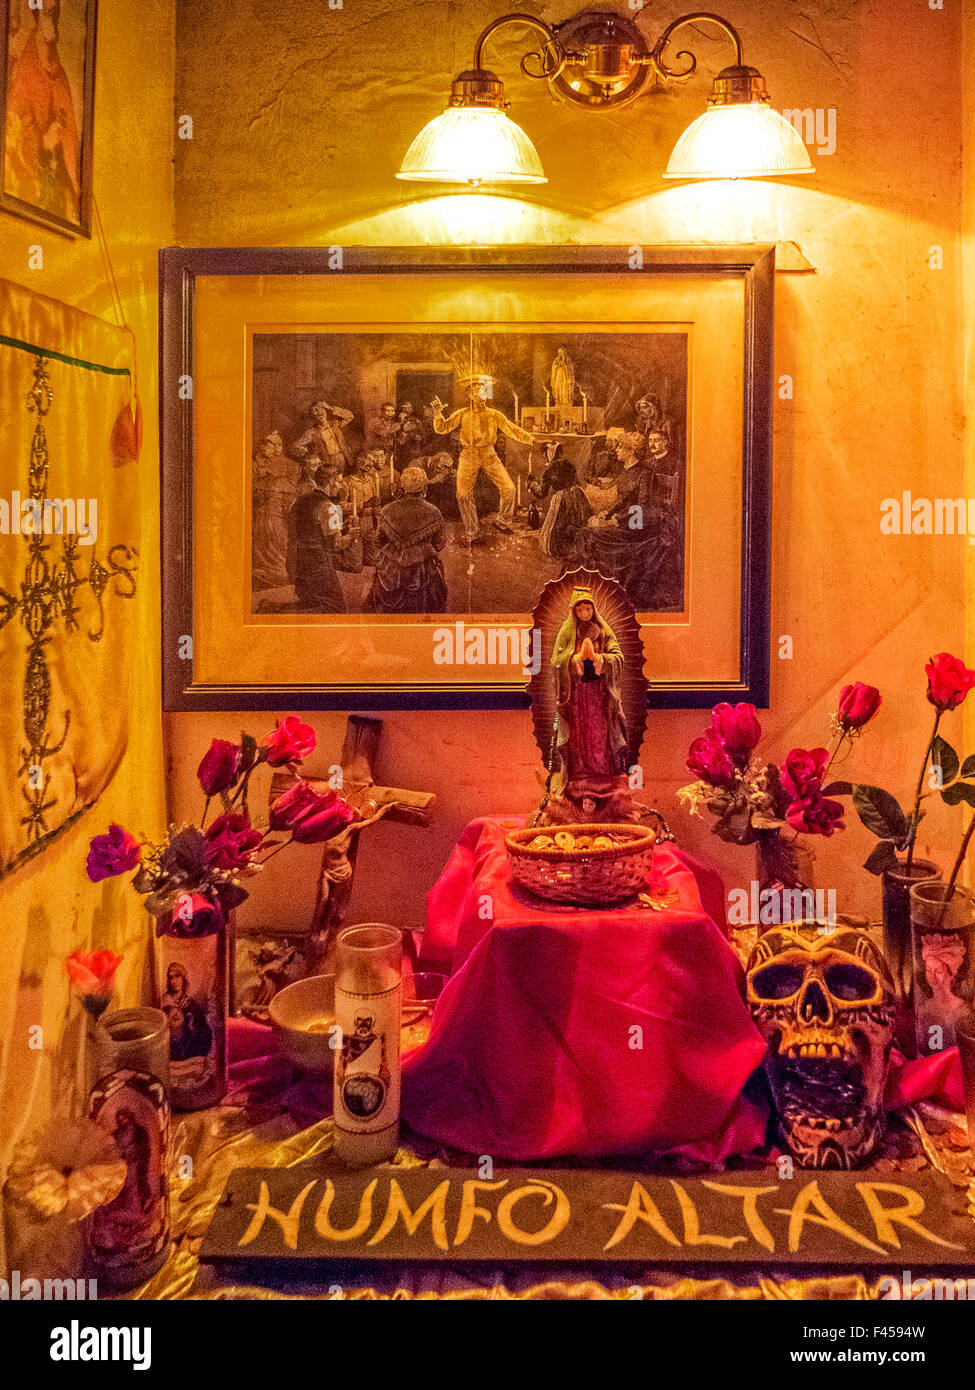 Im Voodoo Museum in New Orleans mischt sich ein Humfo Altar Christentum und Voodoo mit katholischen Heiligen, Voodoo-Geister darstellt. Hinweis: Ätzen von Voodoo-Zeremonie, Statue der Maria, künstliche Rosen und Modell Schädel. Stockfoto